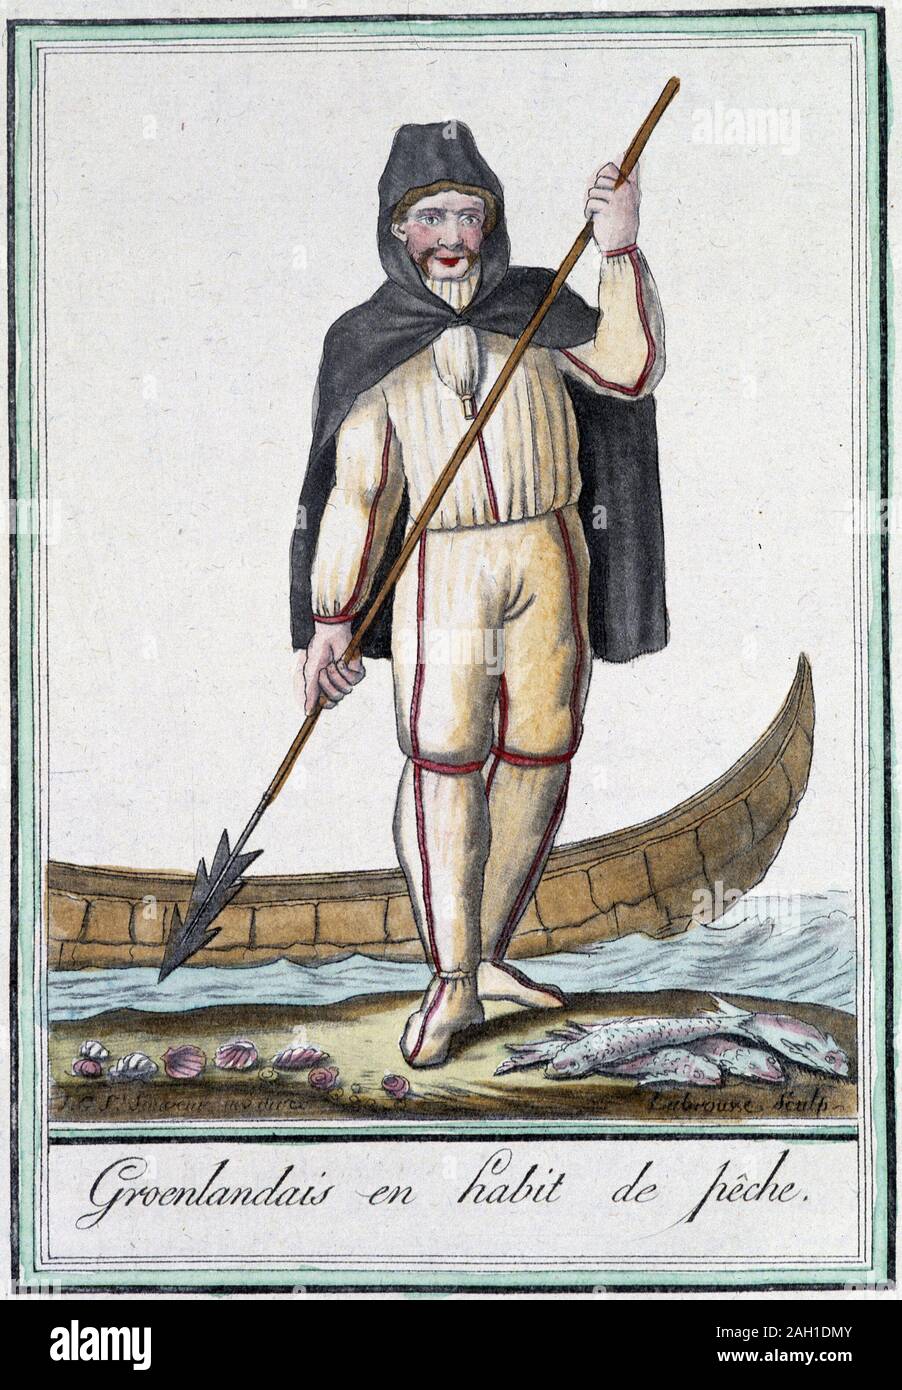 Groenlandais en habit de pche - dans 'Encyclopedie des voyages' par Grasset Saint-sauveur, ed. Paris 1796 Banque D'Images